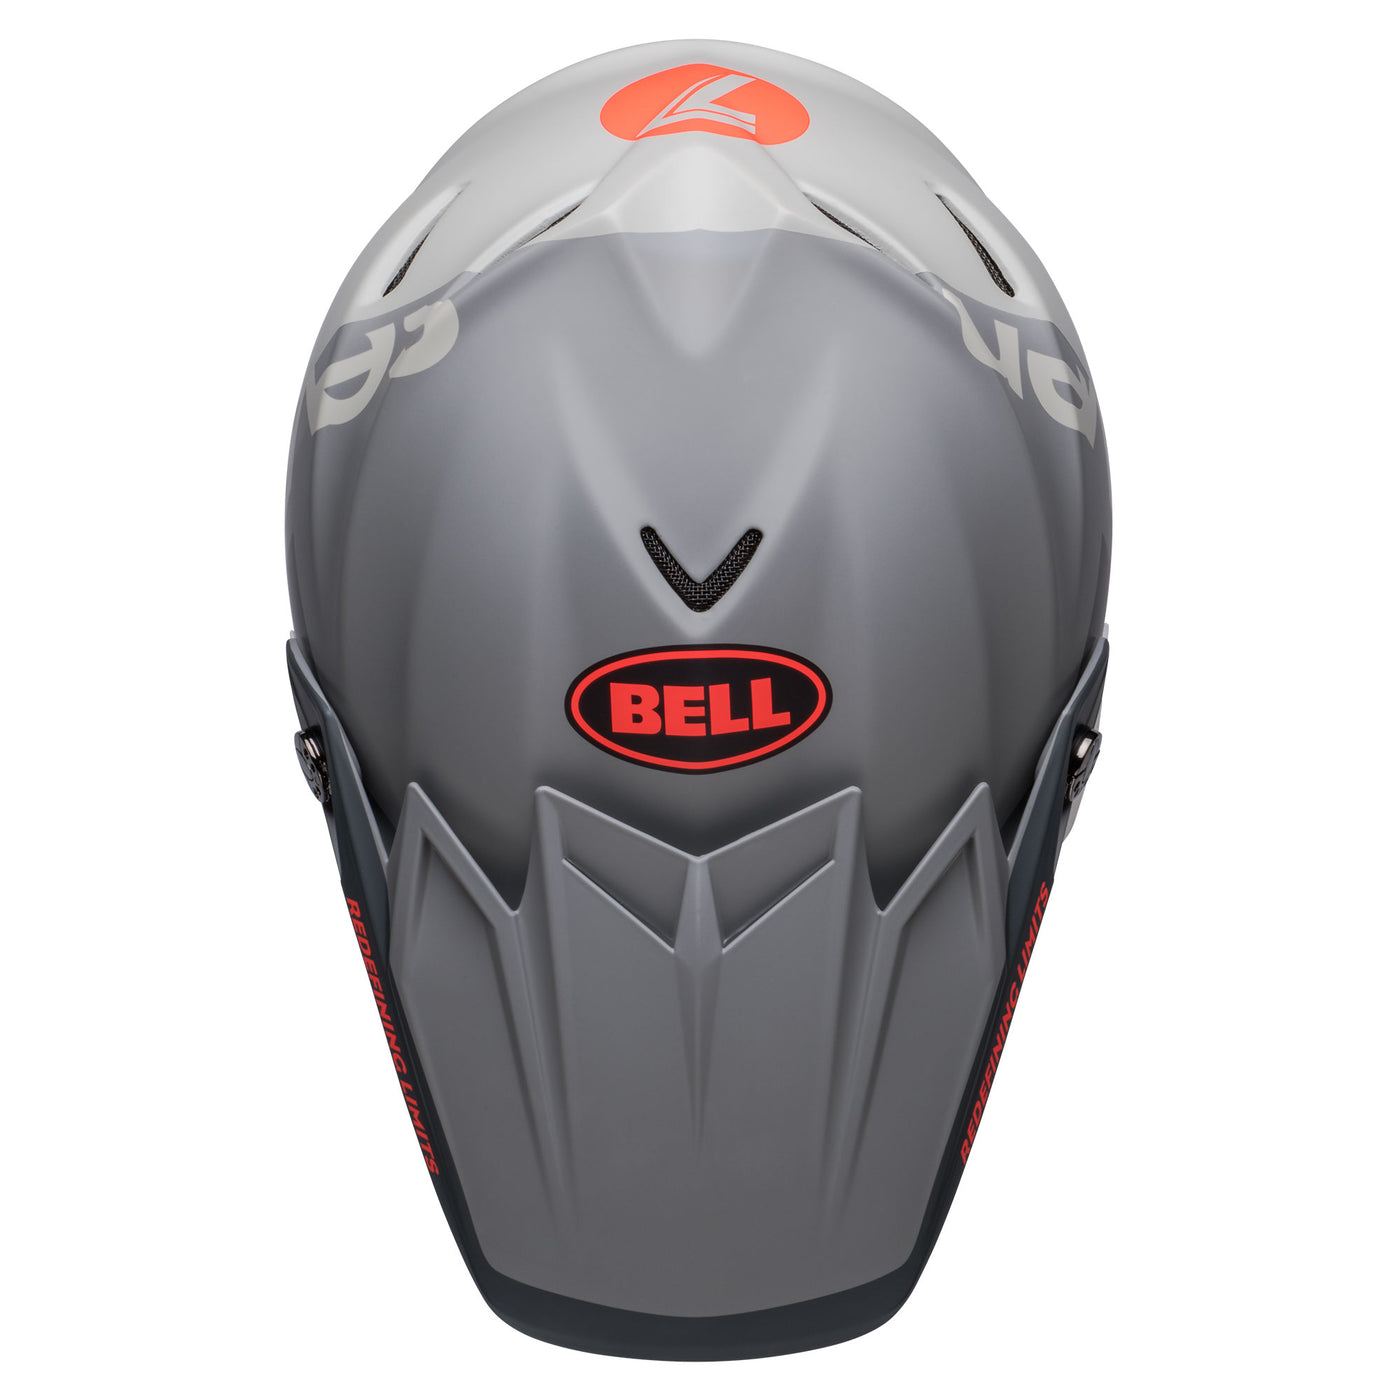 bell moto 9s flex dirt motorcycle helmet seven vanguard matte charcoal orange top